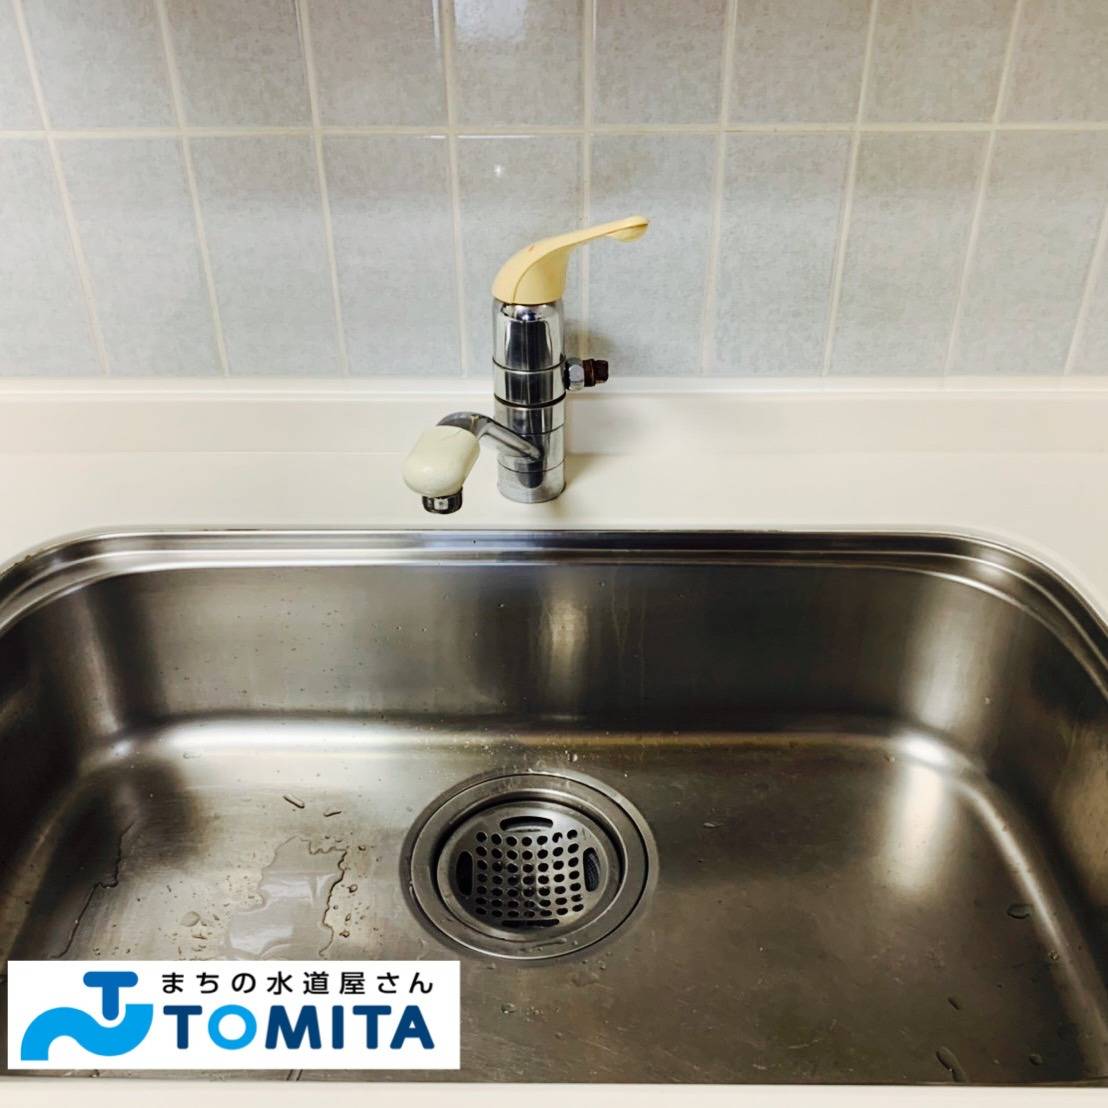 【交換前】キッチンの水栓金具は使用頻度が多く、長年使用するとグラつきが生じることがありますね。